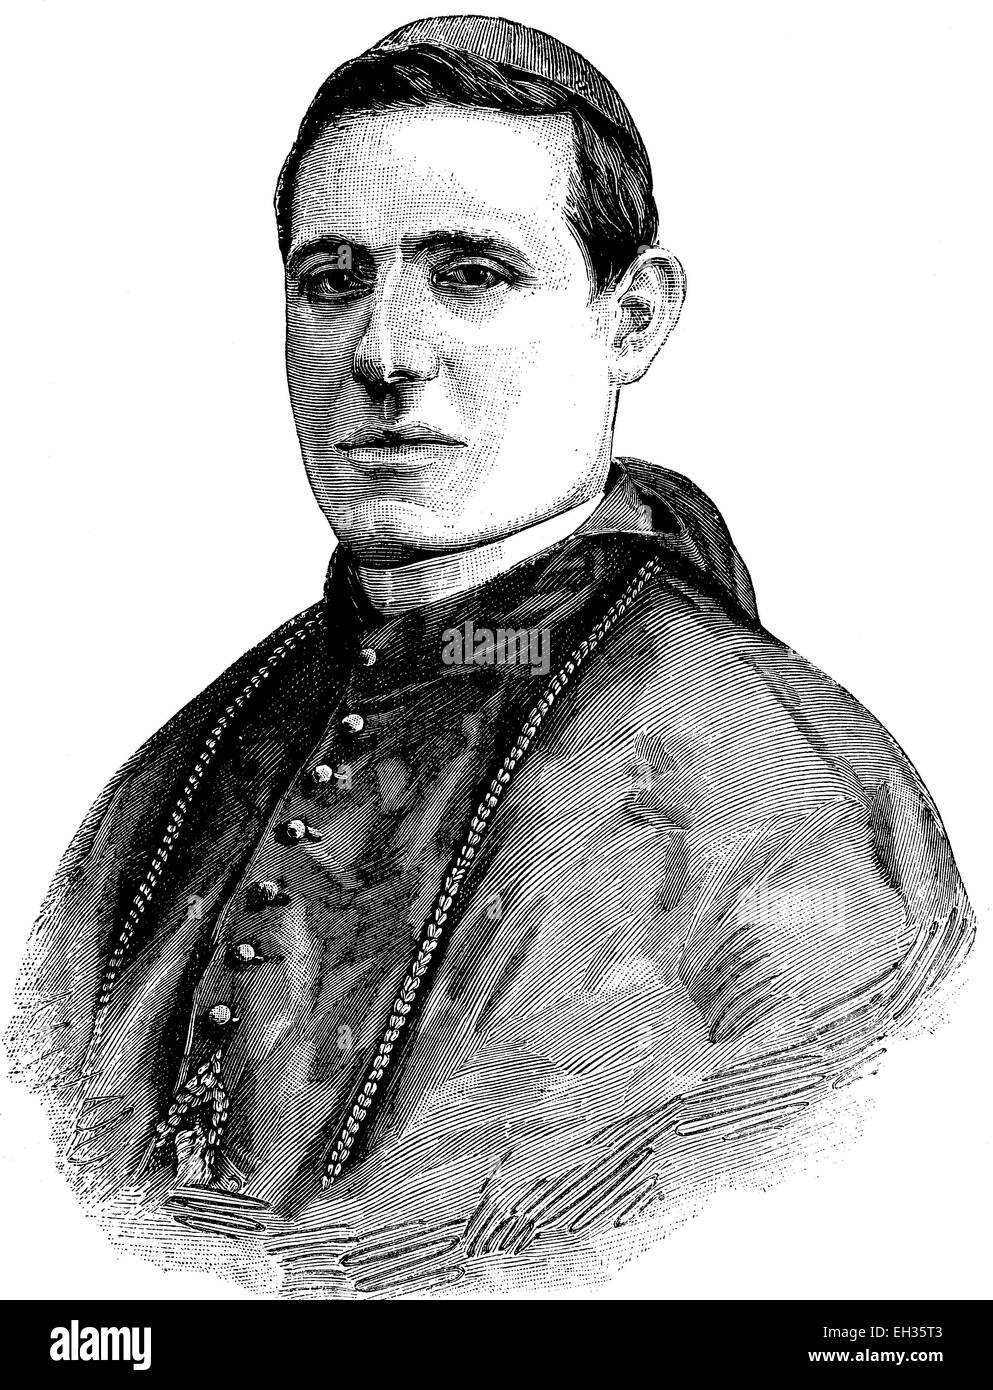 Le Cardinal Mariano Rampolla del Tindaro, 1843-1913, le Cardinal Secrétaire d'État au cours du pontificat de Léon XIII, l'un des dirigeants de l'Église catholique dans la seconde moitié du xixe siècle, gravure sur bois, gravure historique, 1880 Banque D'Images